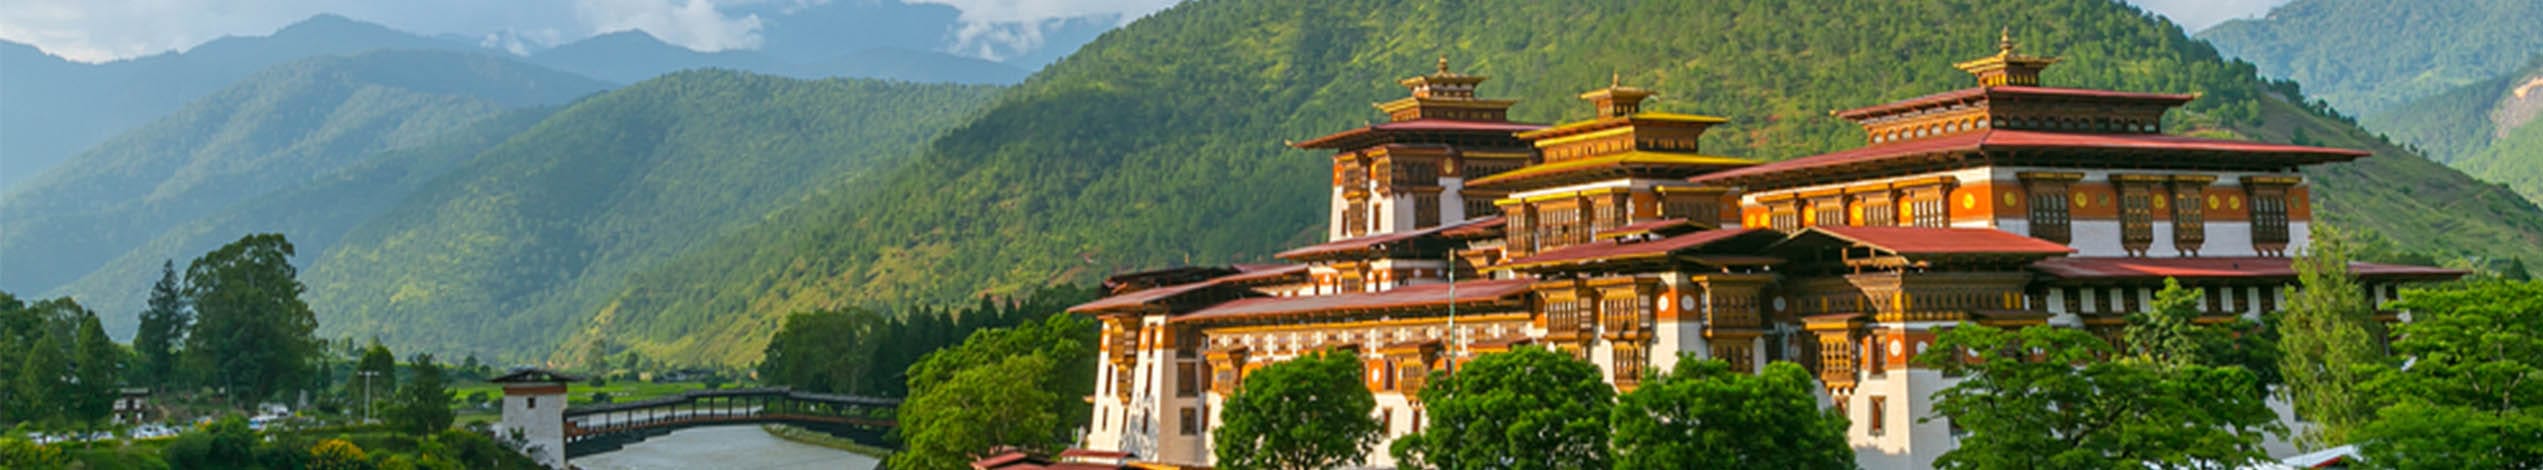 Rejseforedrag om Nepal og Bhutan